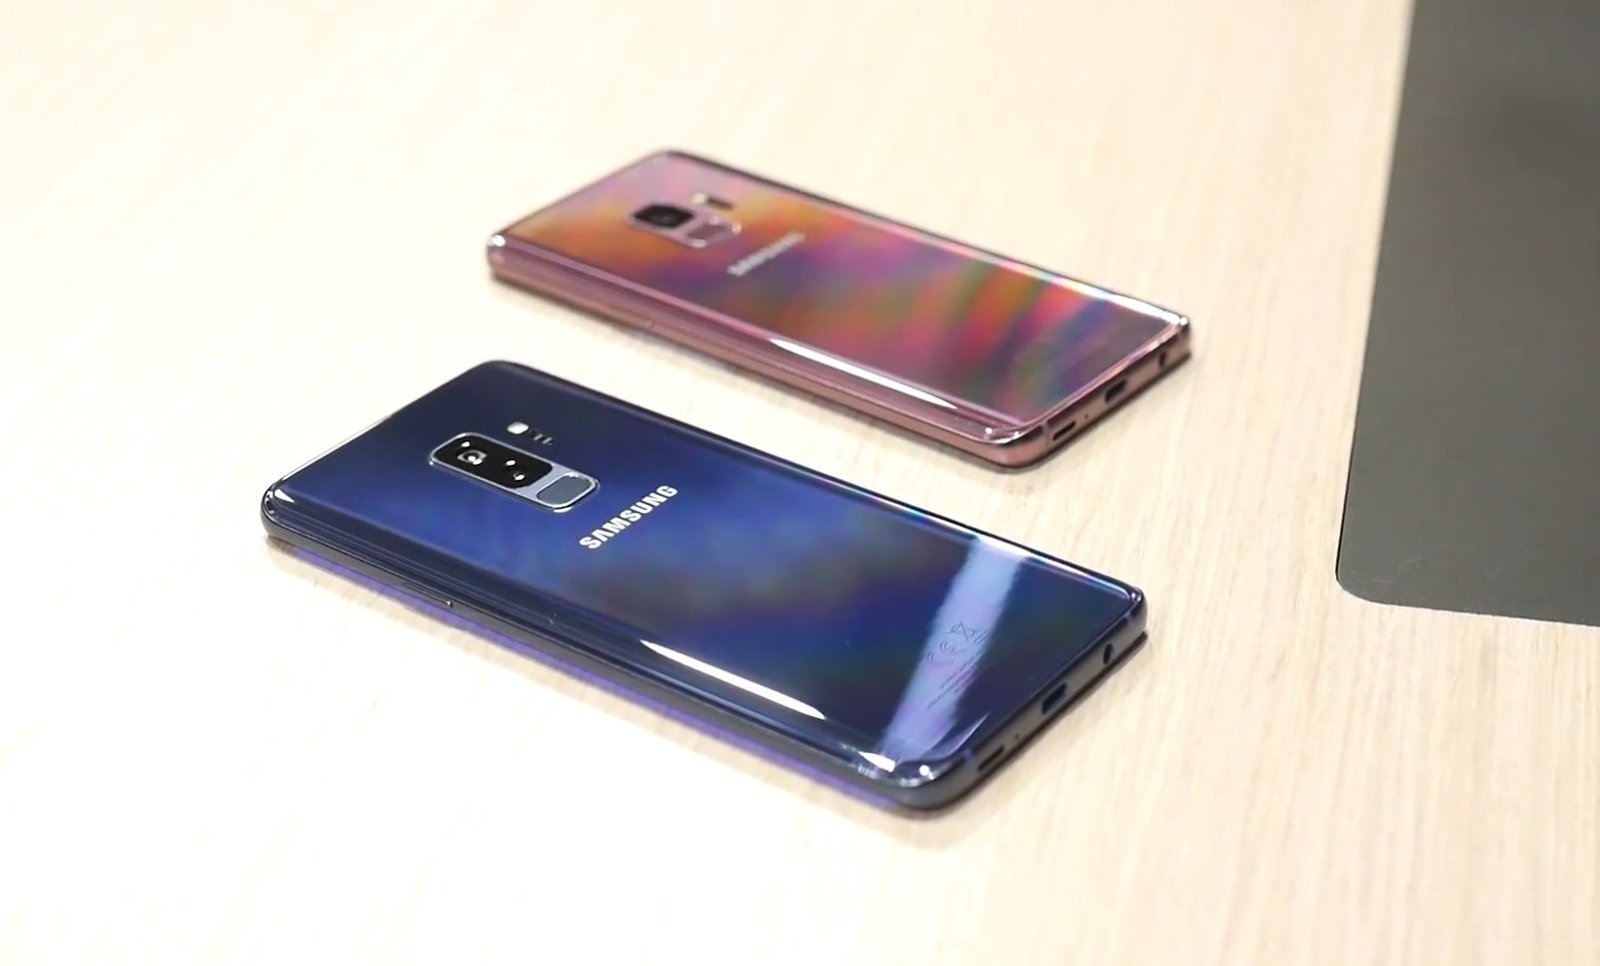 Samsung Galaxy S9 y S9+, colores